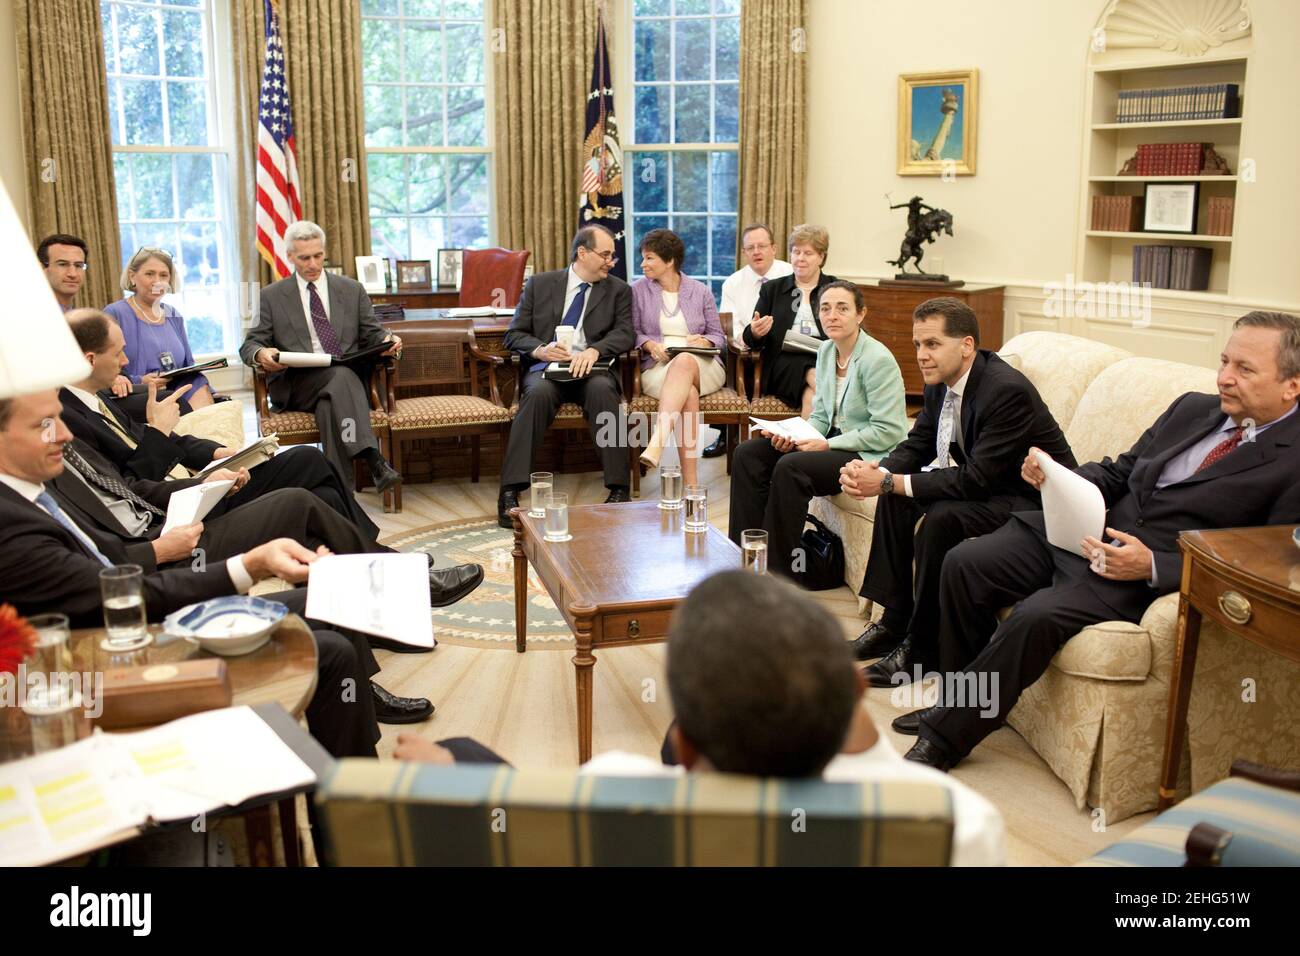 Il presidente Barack Obama incontra i consiglieri durante il briefing giornaliero economico presidenziale presso l'Ufficio ovale, 26 giugno 2009. Foto Stock